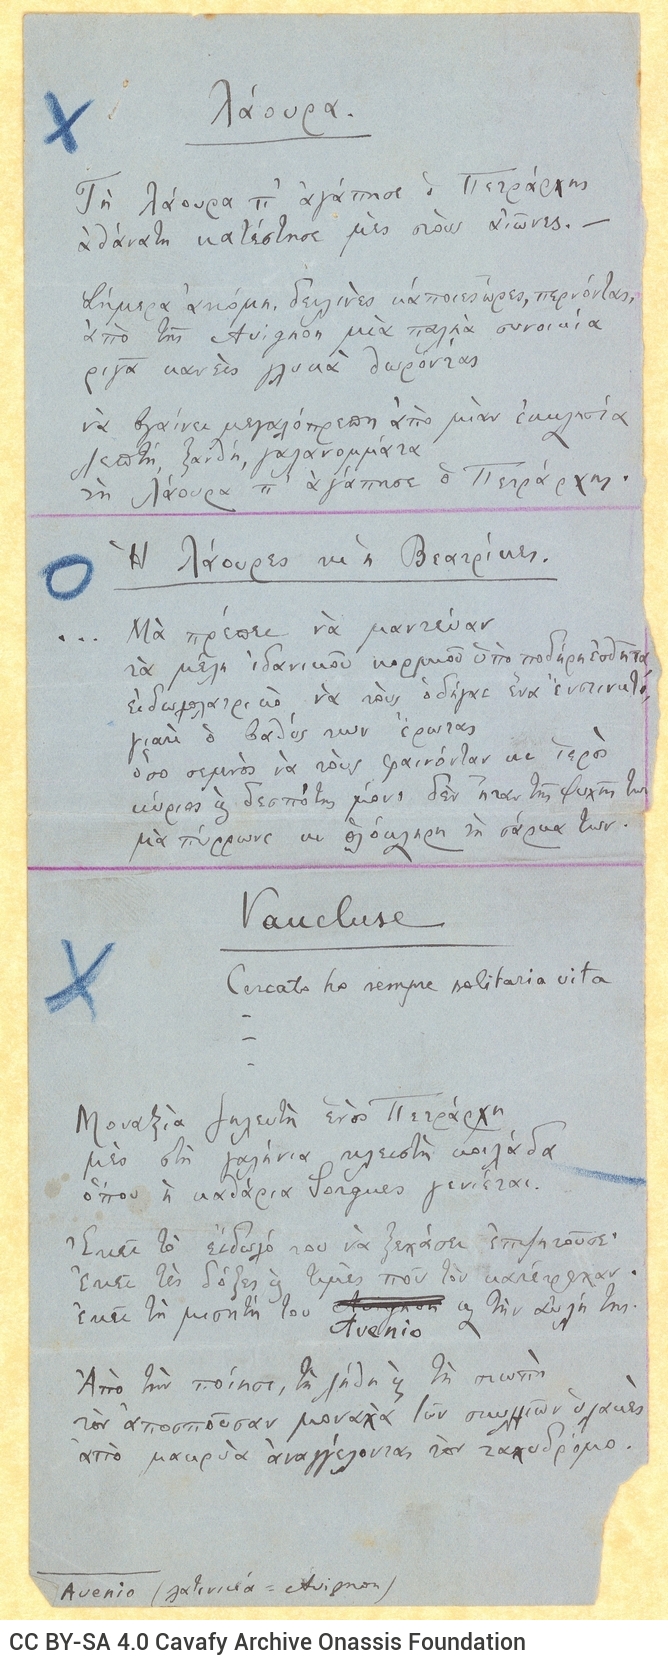 Handwritten poems ("Apo tous protous", "Laoura", "Oi Laoures kai i Veatrikes", "Vaucluse") on one side of two sheets. Handwri